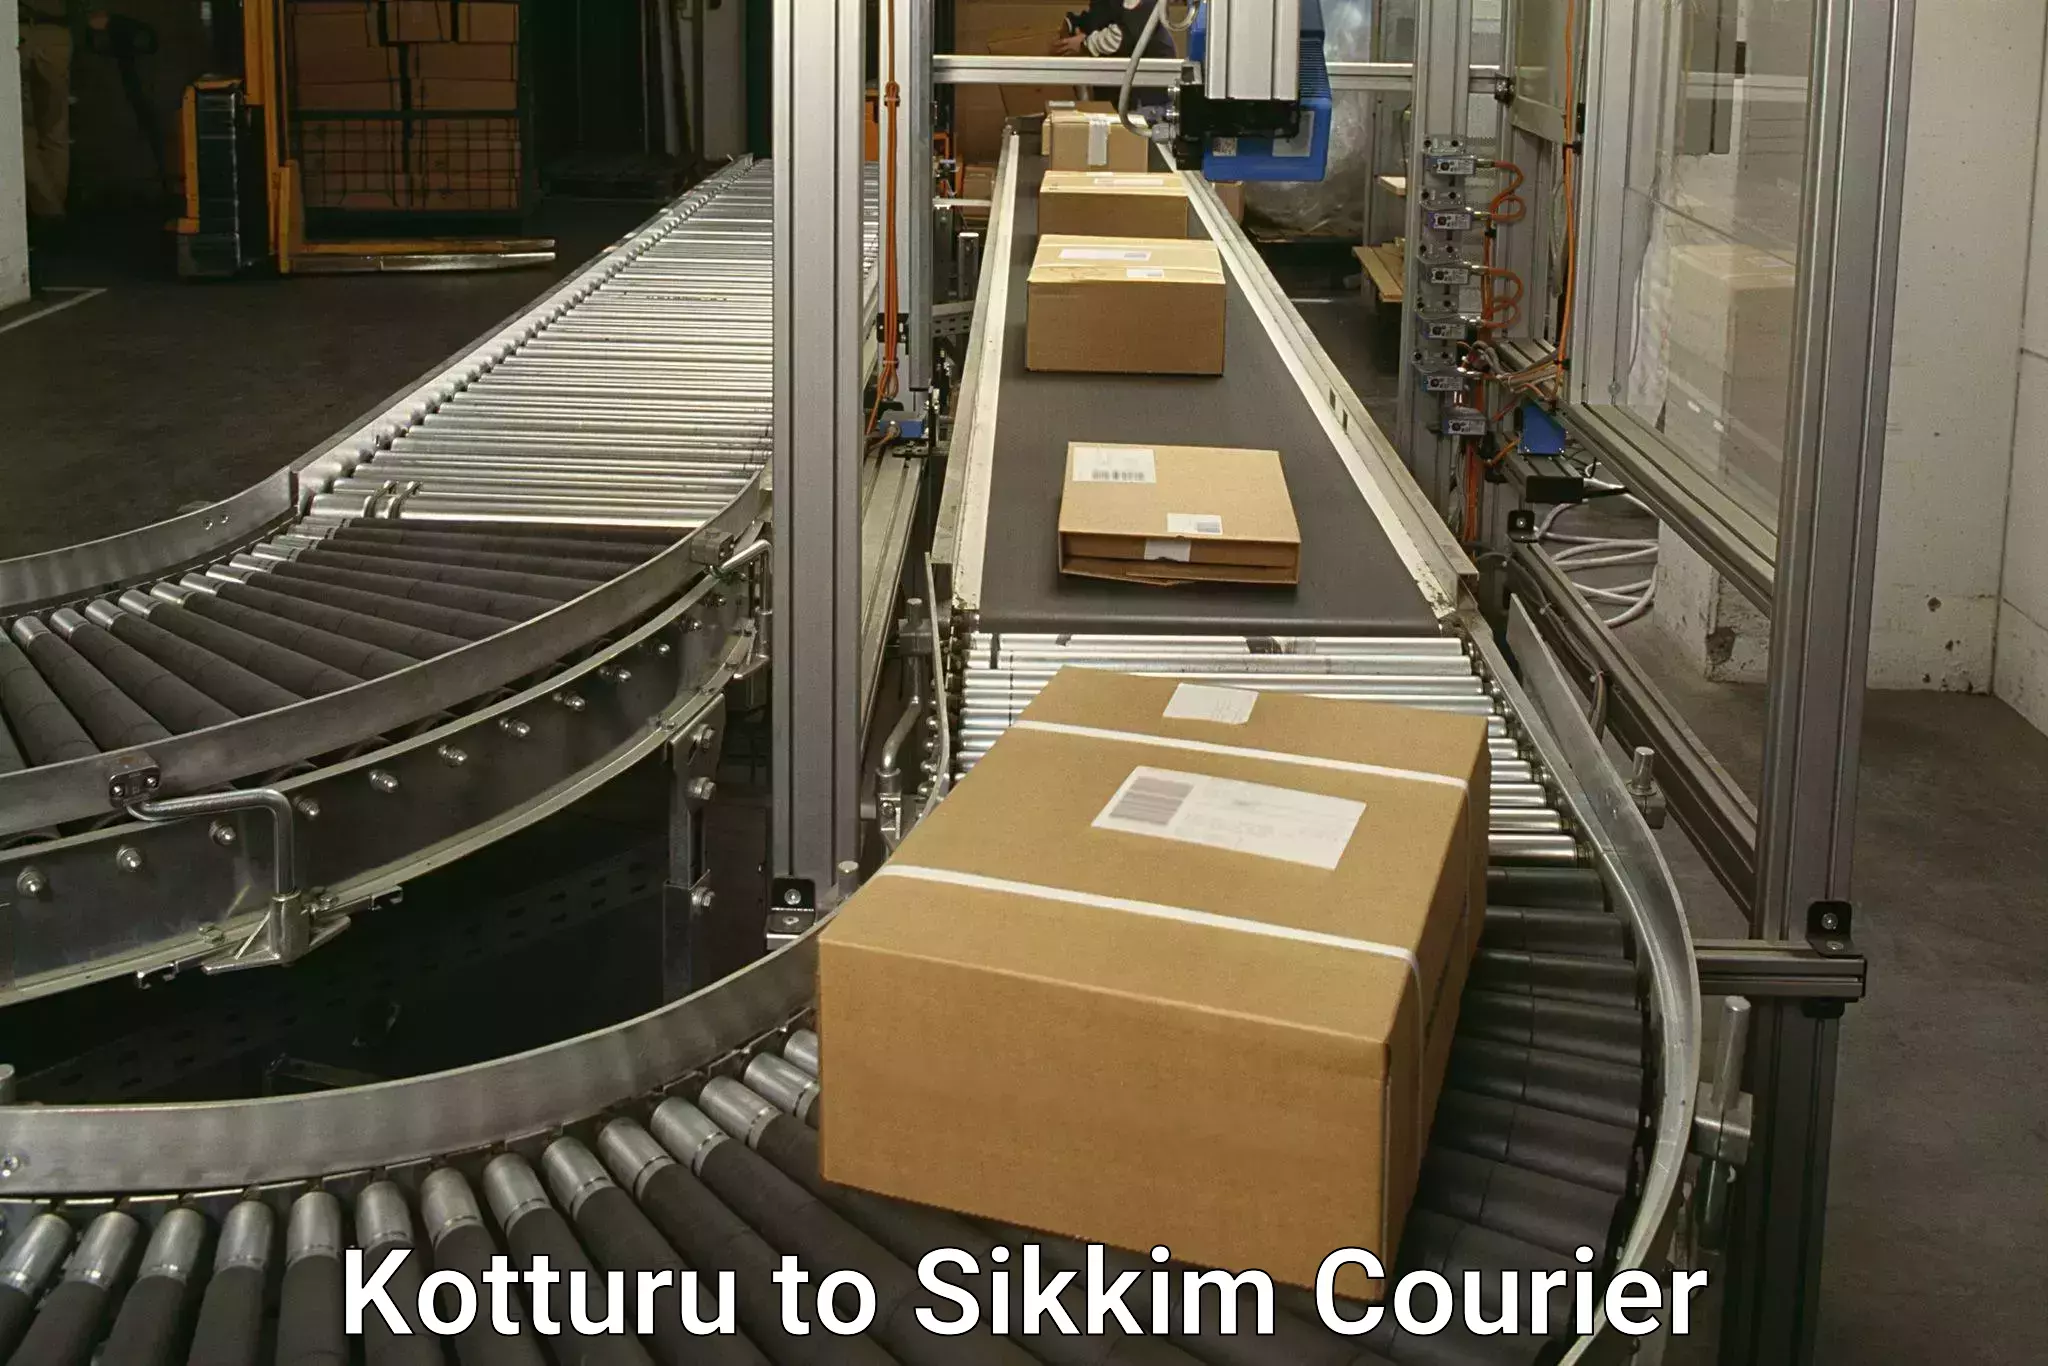 Package forwarding in Kotturu to Sikkim